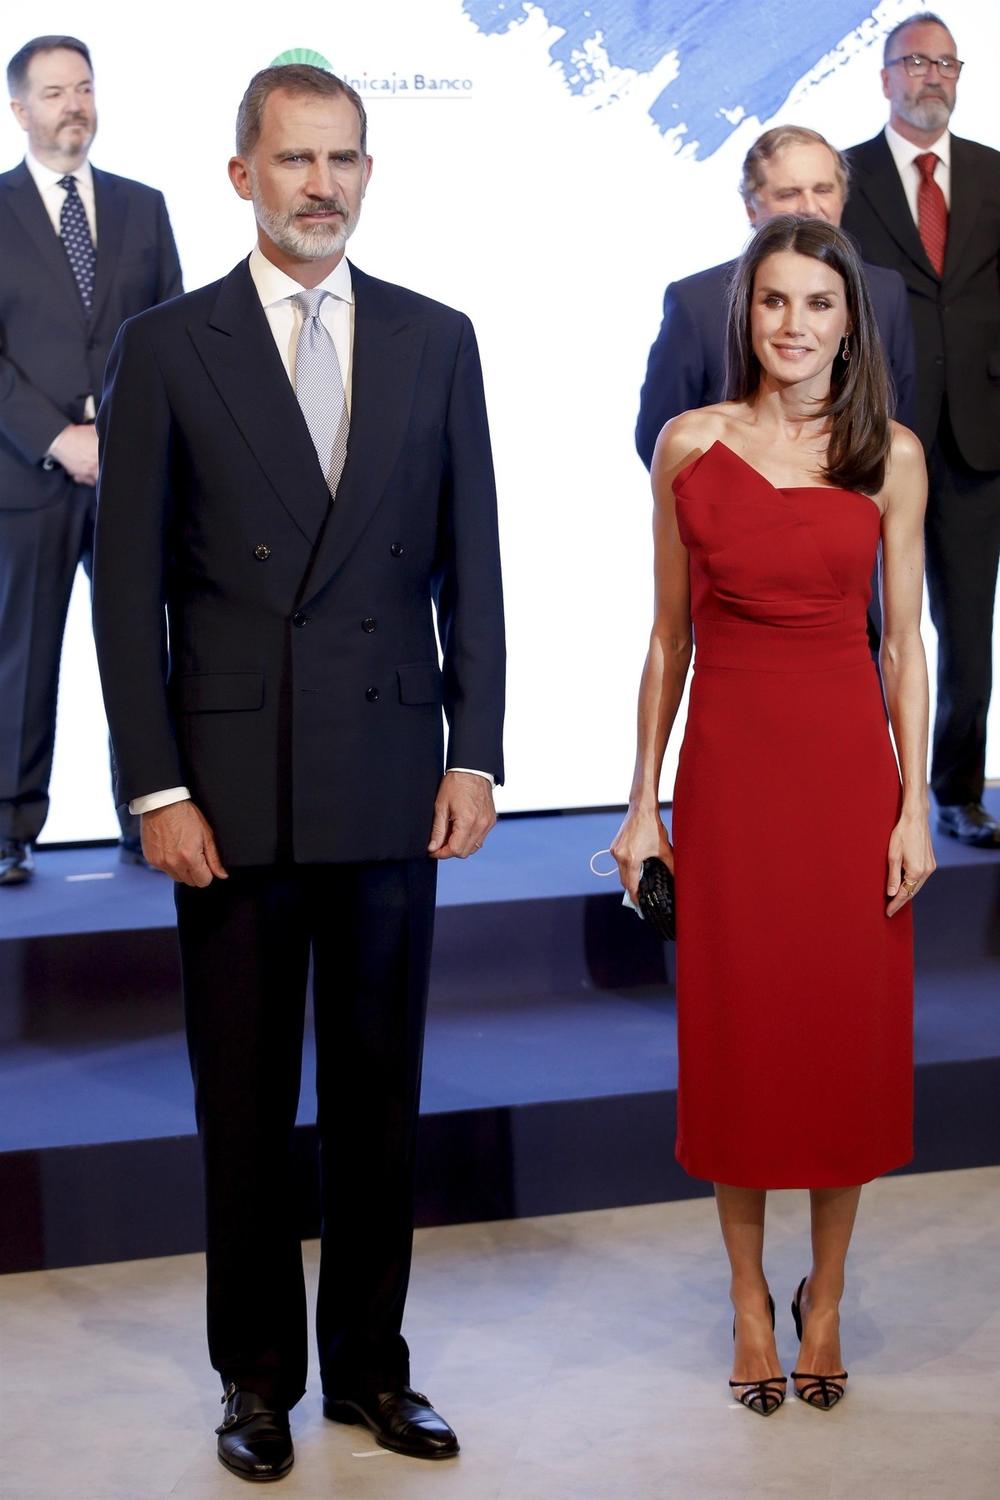 <p>Ako želite neobičnu haljinu prikladnu za svečanije događaje, španska kraljica ima ideju...</p>